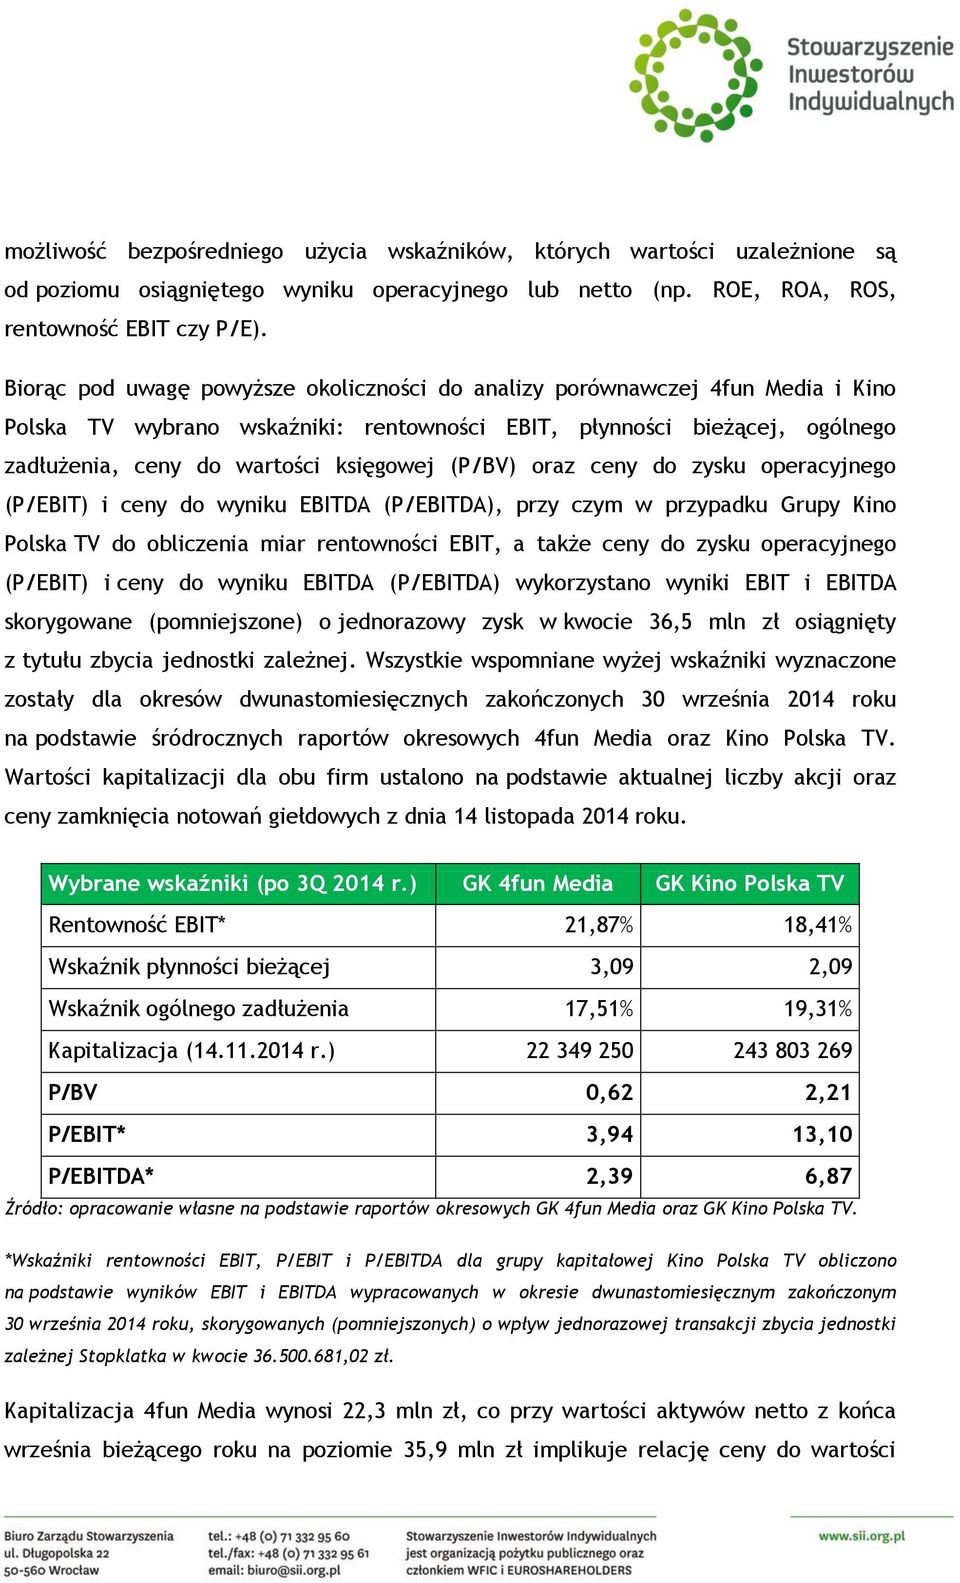 (P/BV) oraz ceny do zysku operacyjnego (P/EBIT) i ceny do wyniku EBITDA (P/EBITDA), przy czym w przypadku Grupy Kino Polska TV do obliczenia miar rentowności EBIT, a także ceny do zysku operacyjnego